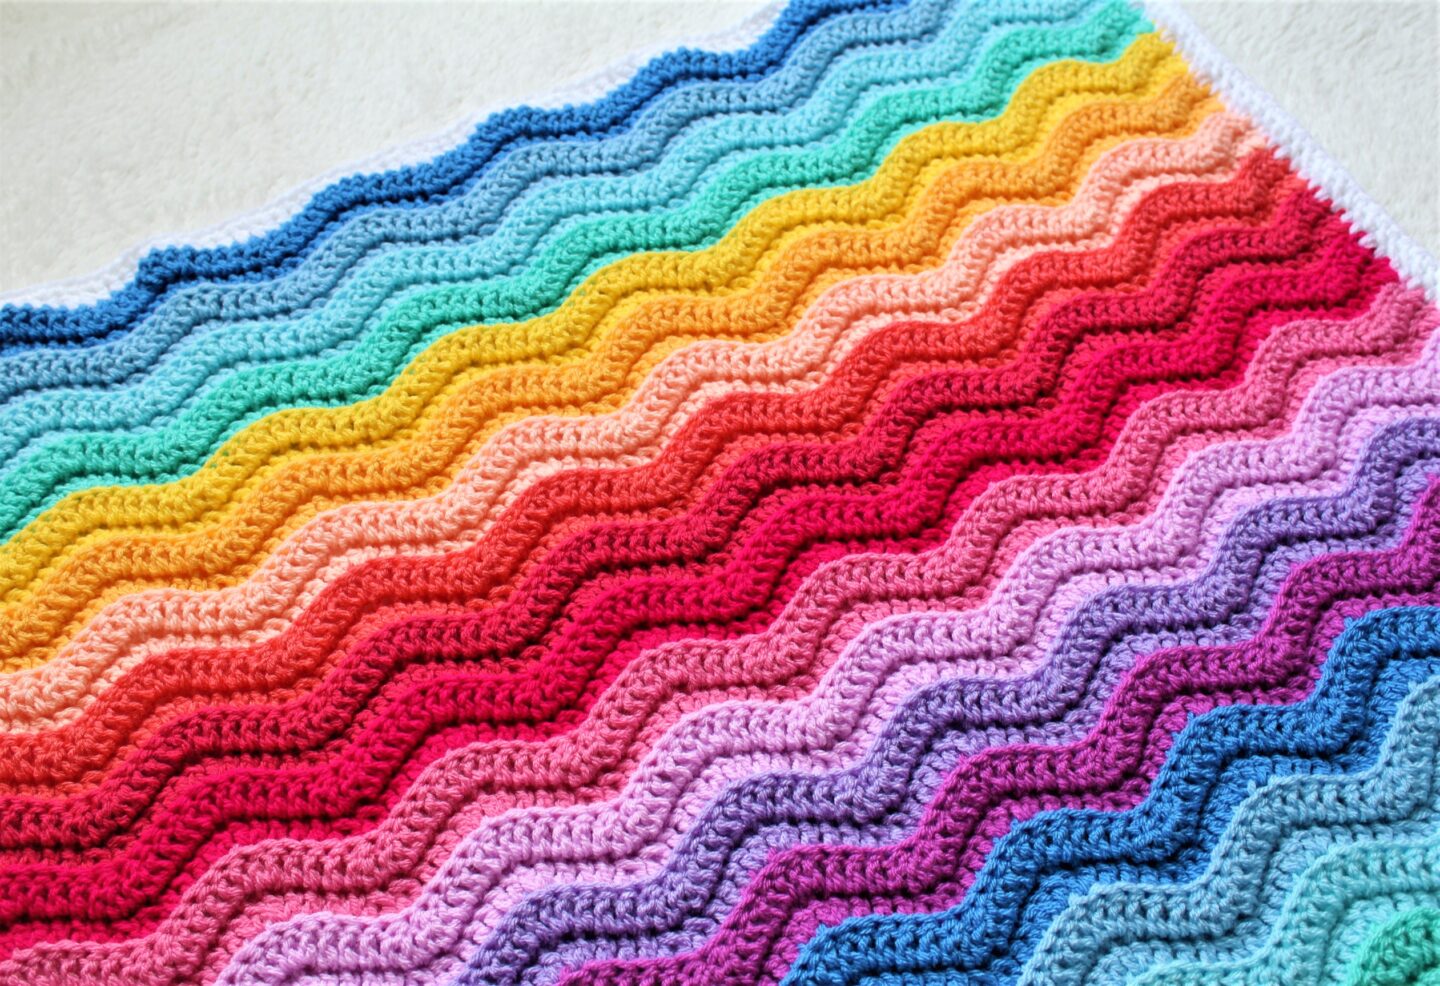 Free crochet baby blanket pattern